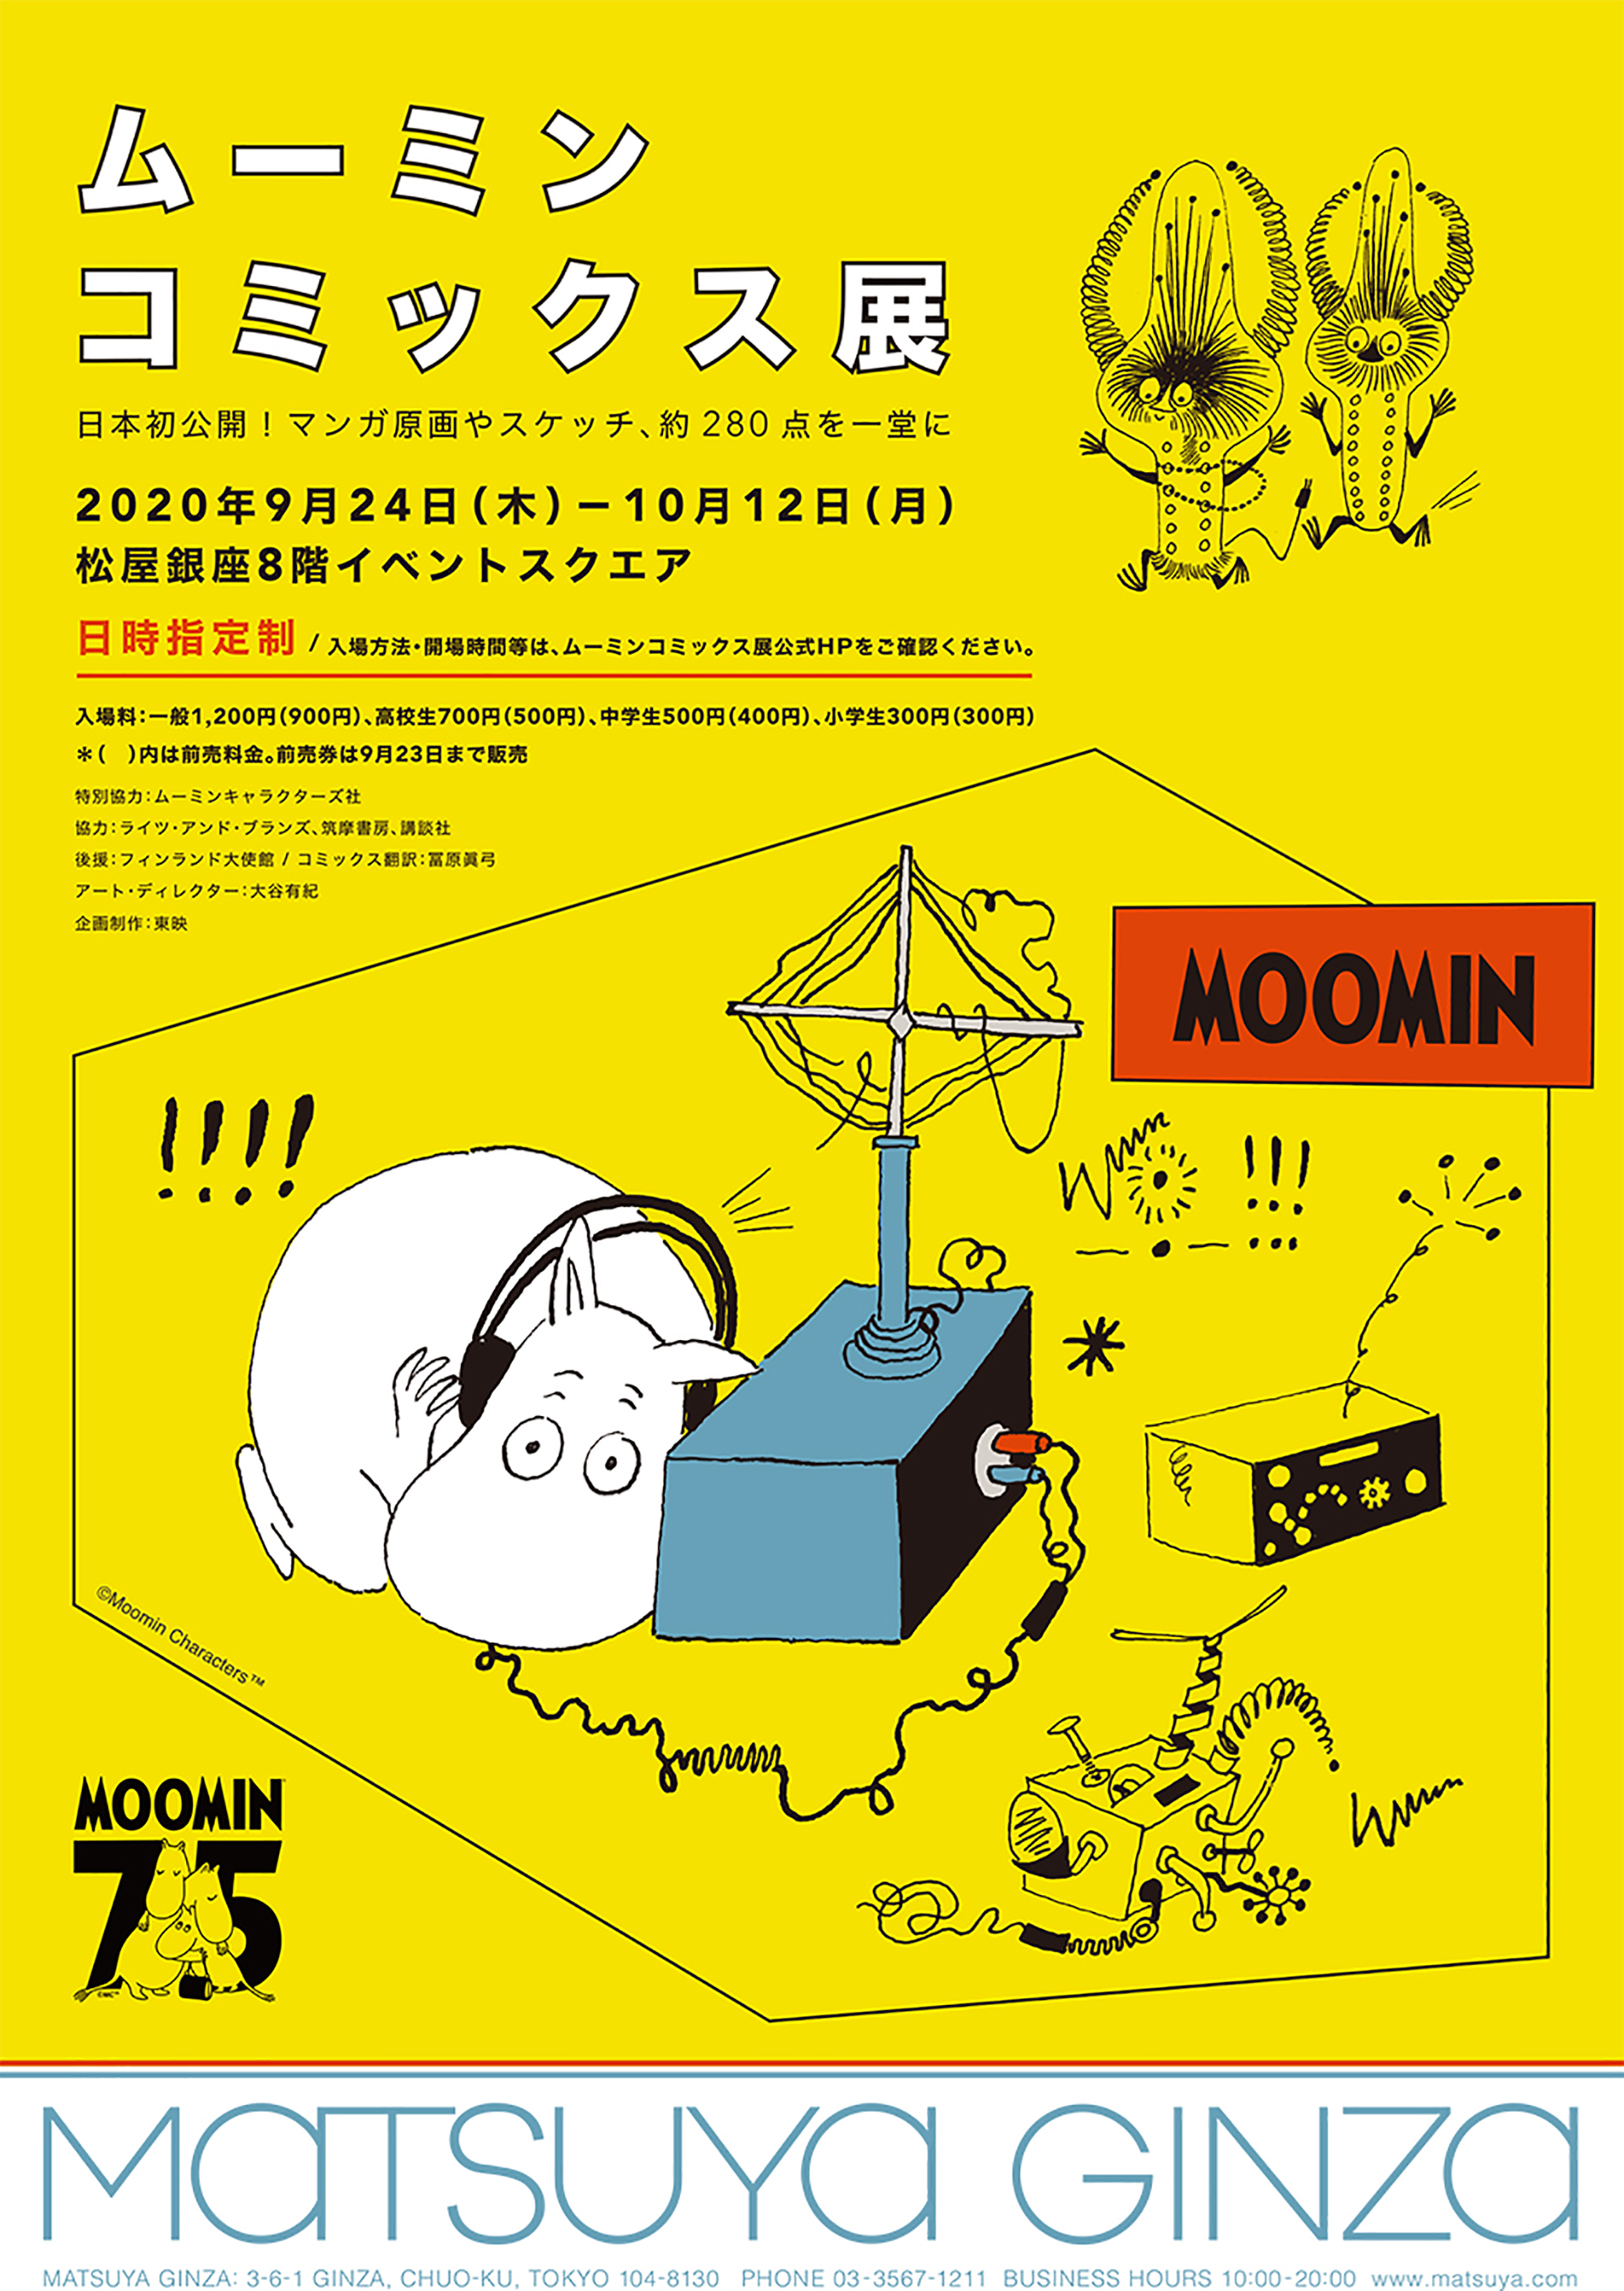 ムーミン７５周年記念「ムーミン コミックス展」松屋銀座